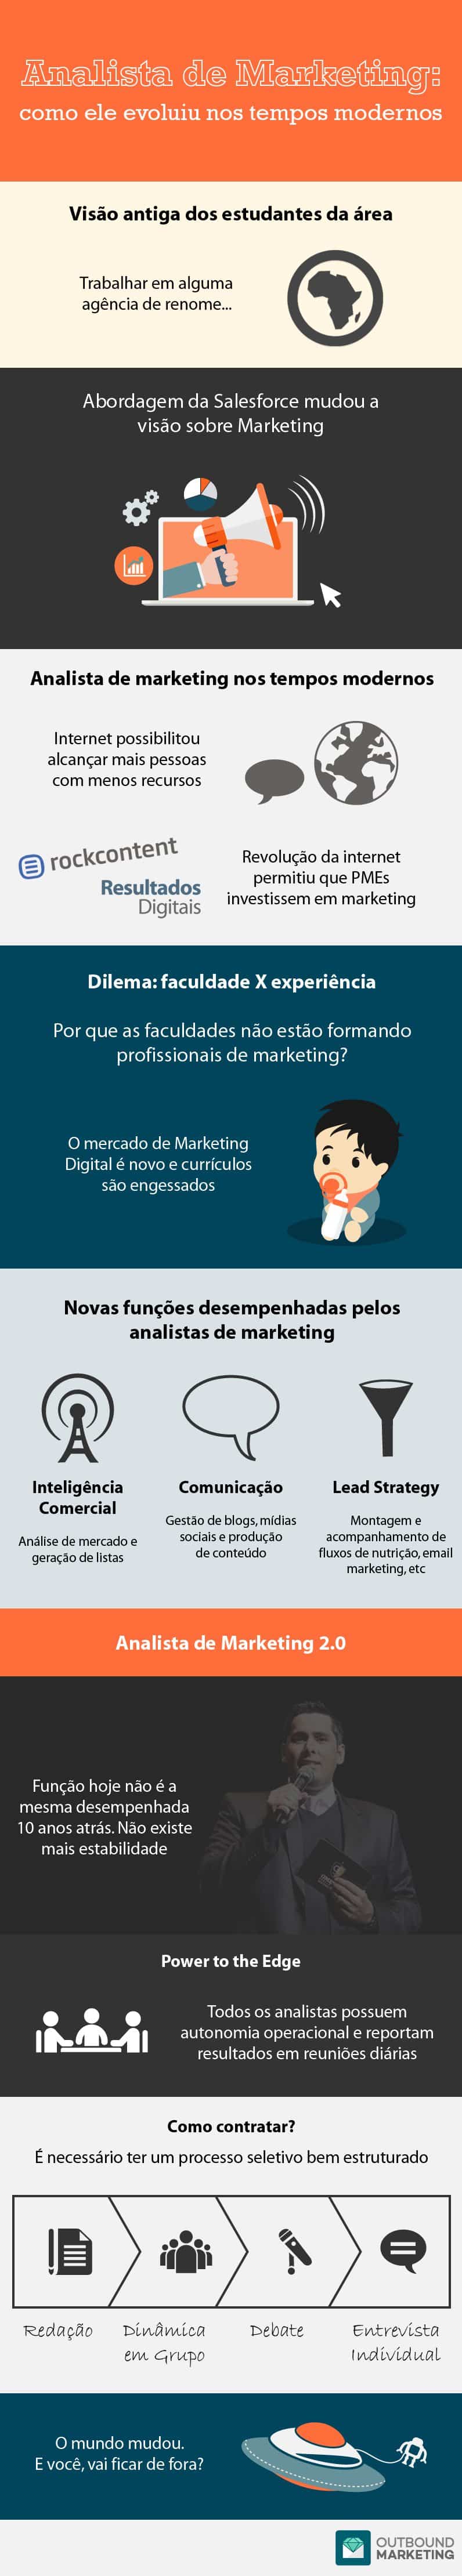 Infografico18 - Analista de Marketing - Evolução 2-01